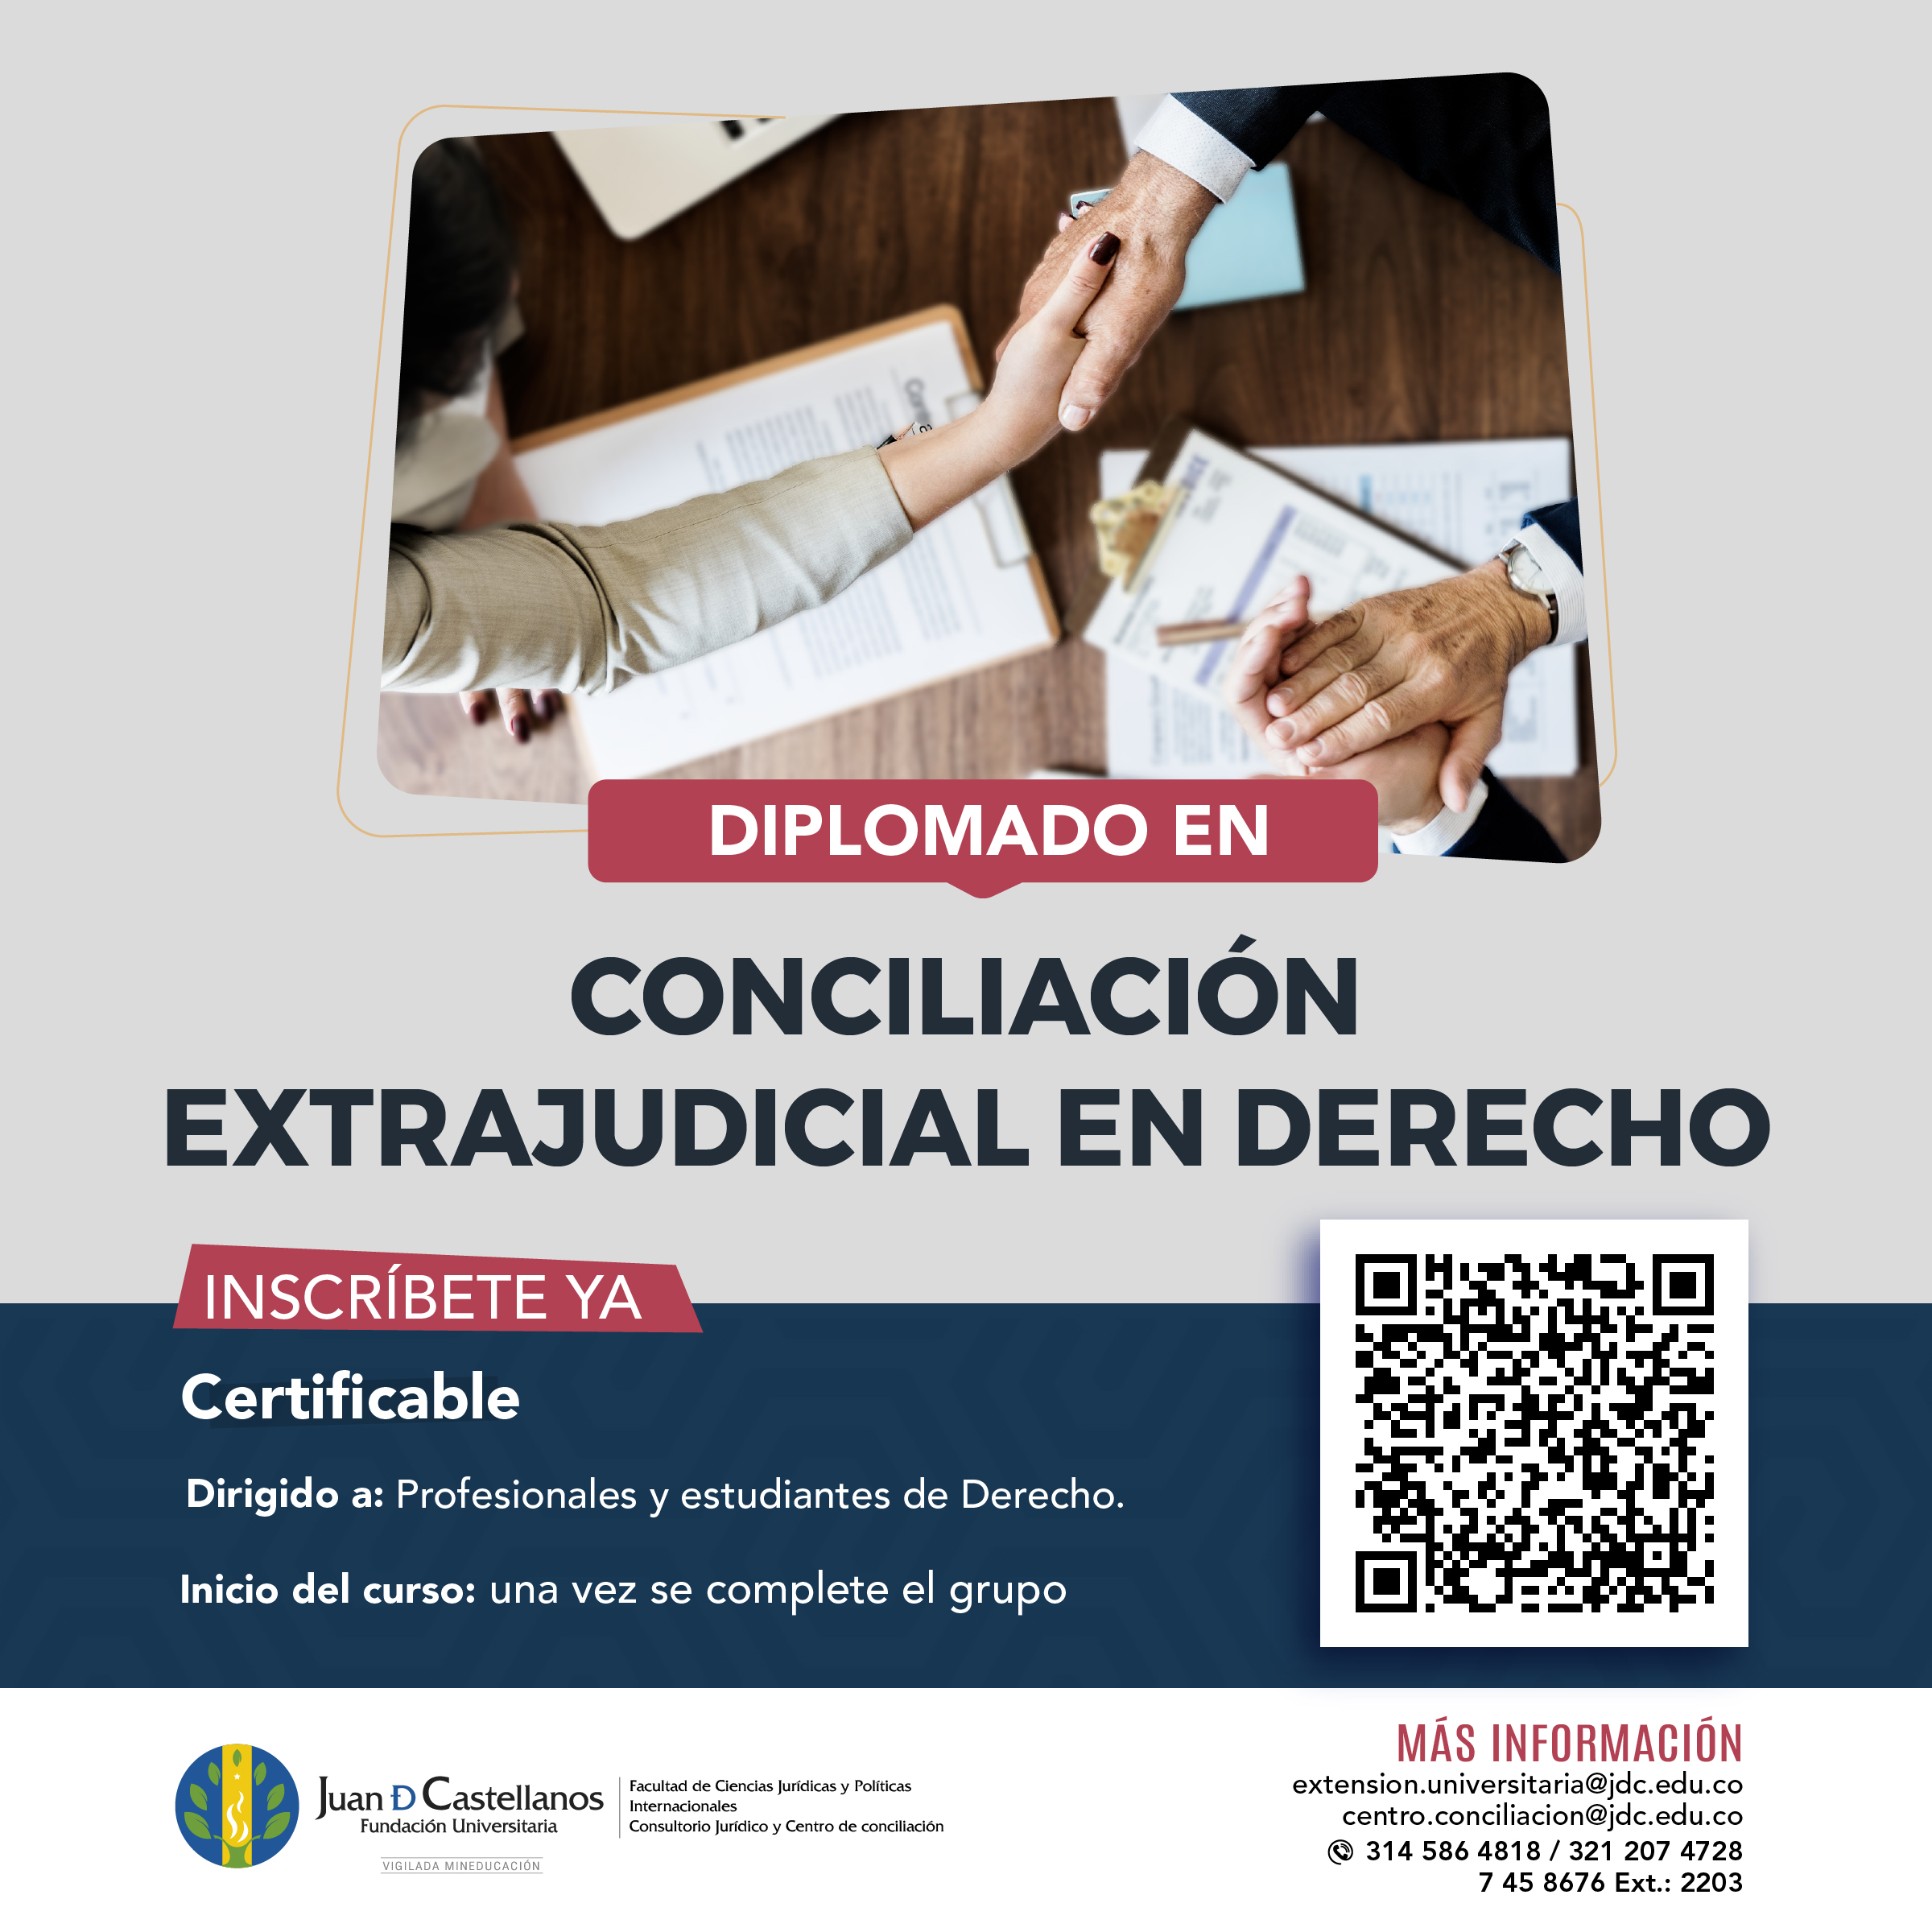 Diplomado de Conciliación Extrajudicial en Derecho